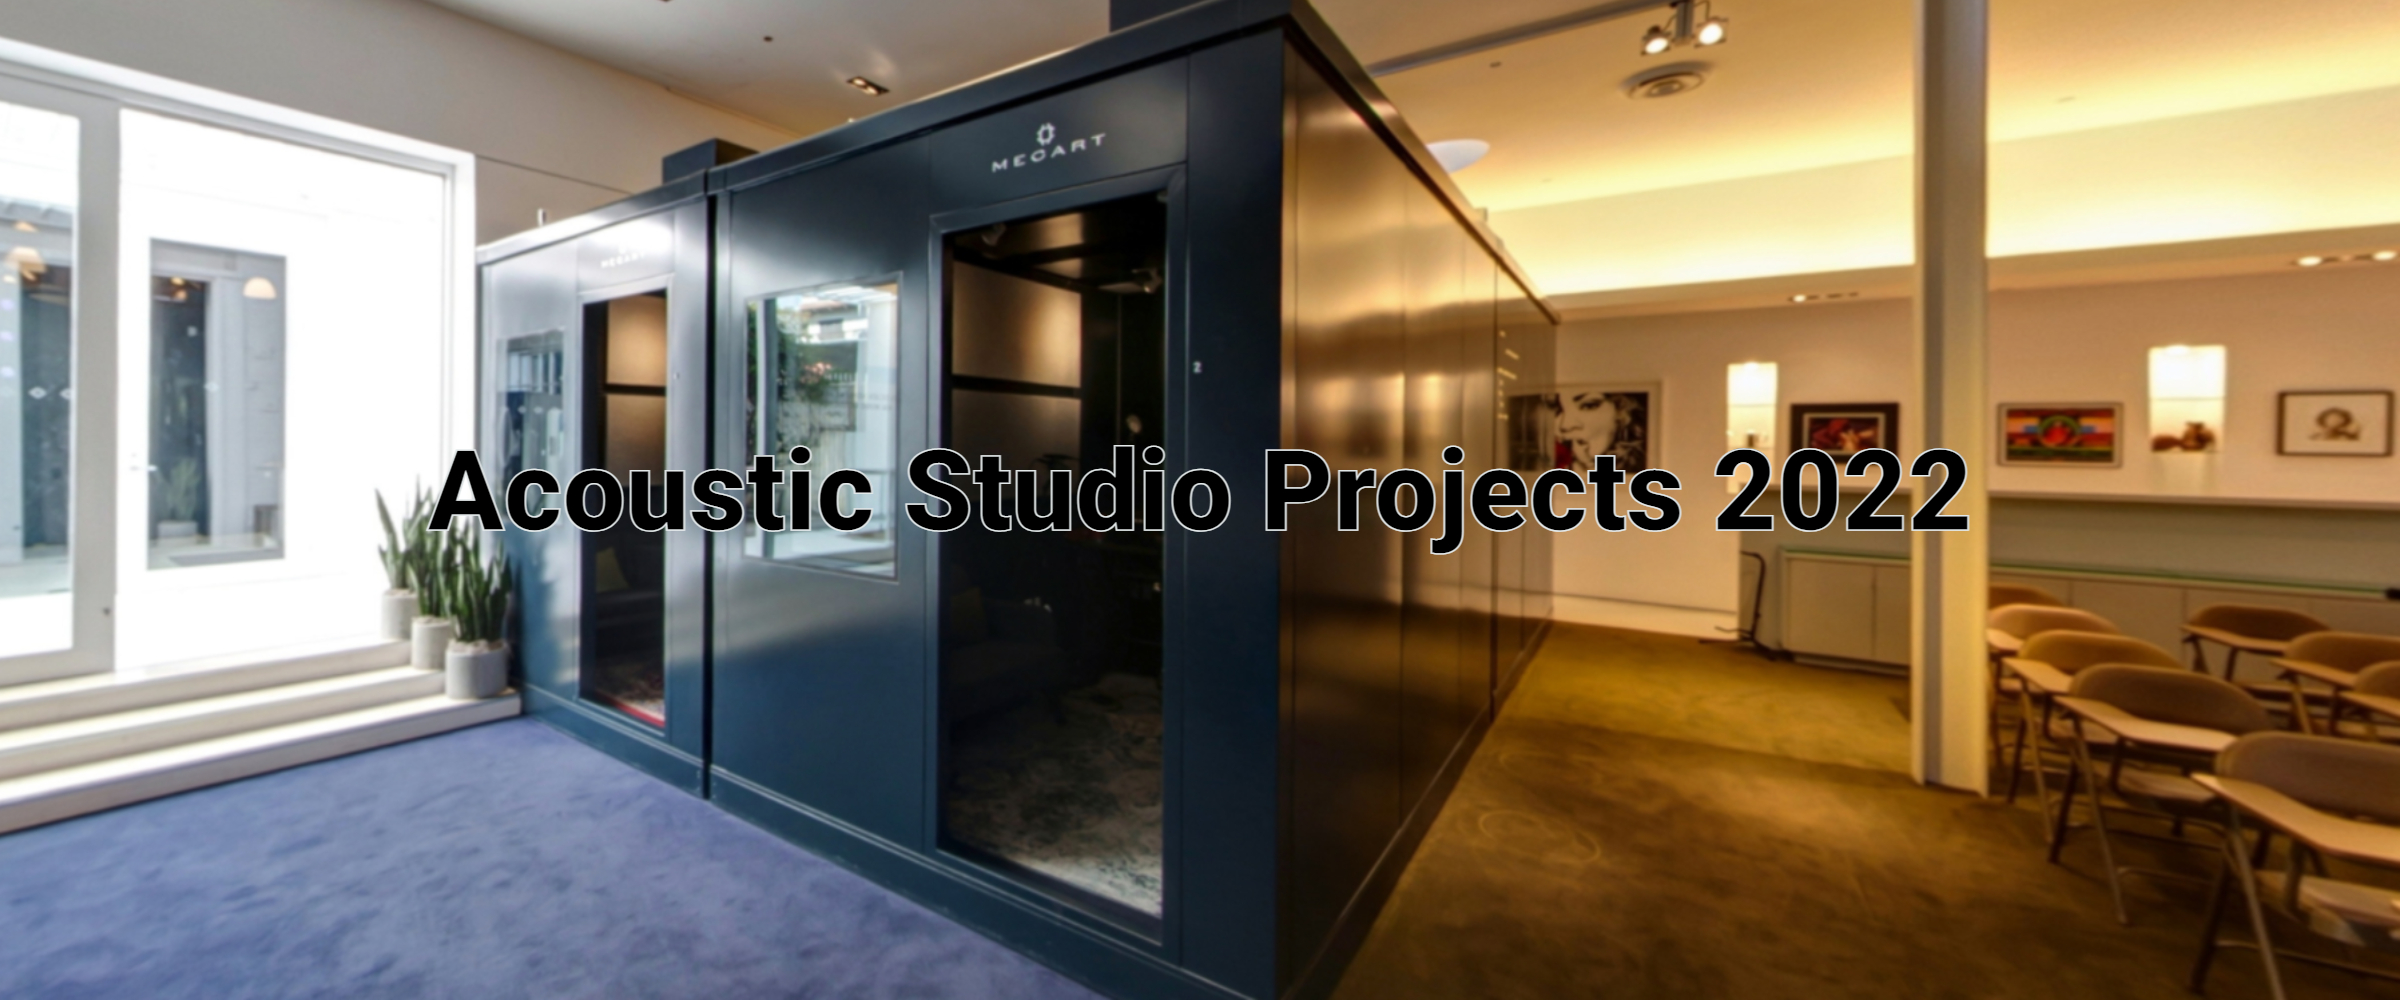 Top 5 MECART Studio Projects of 2022 (1)